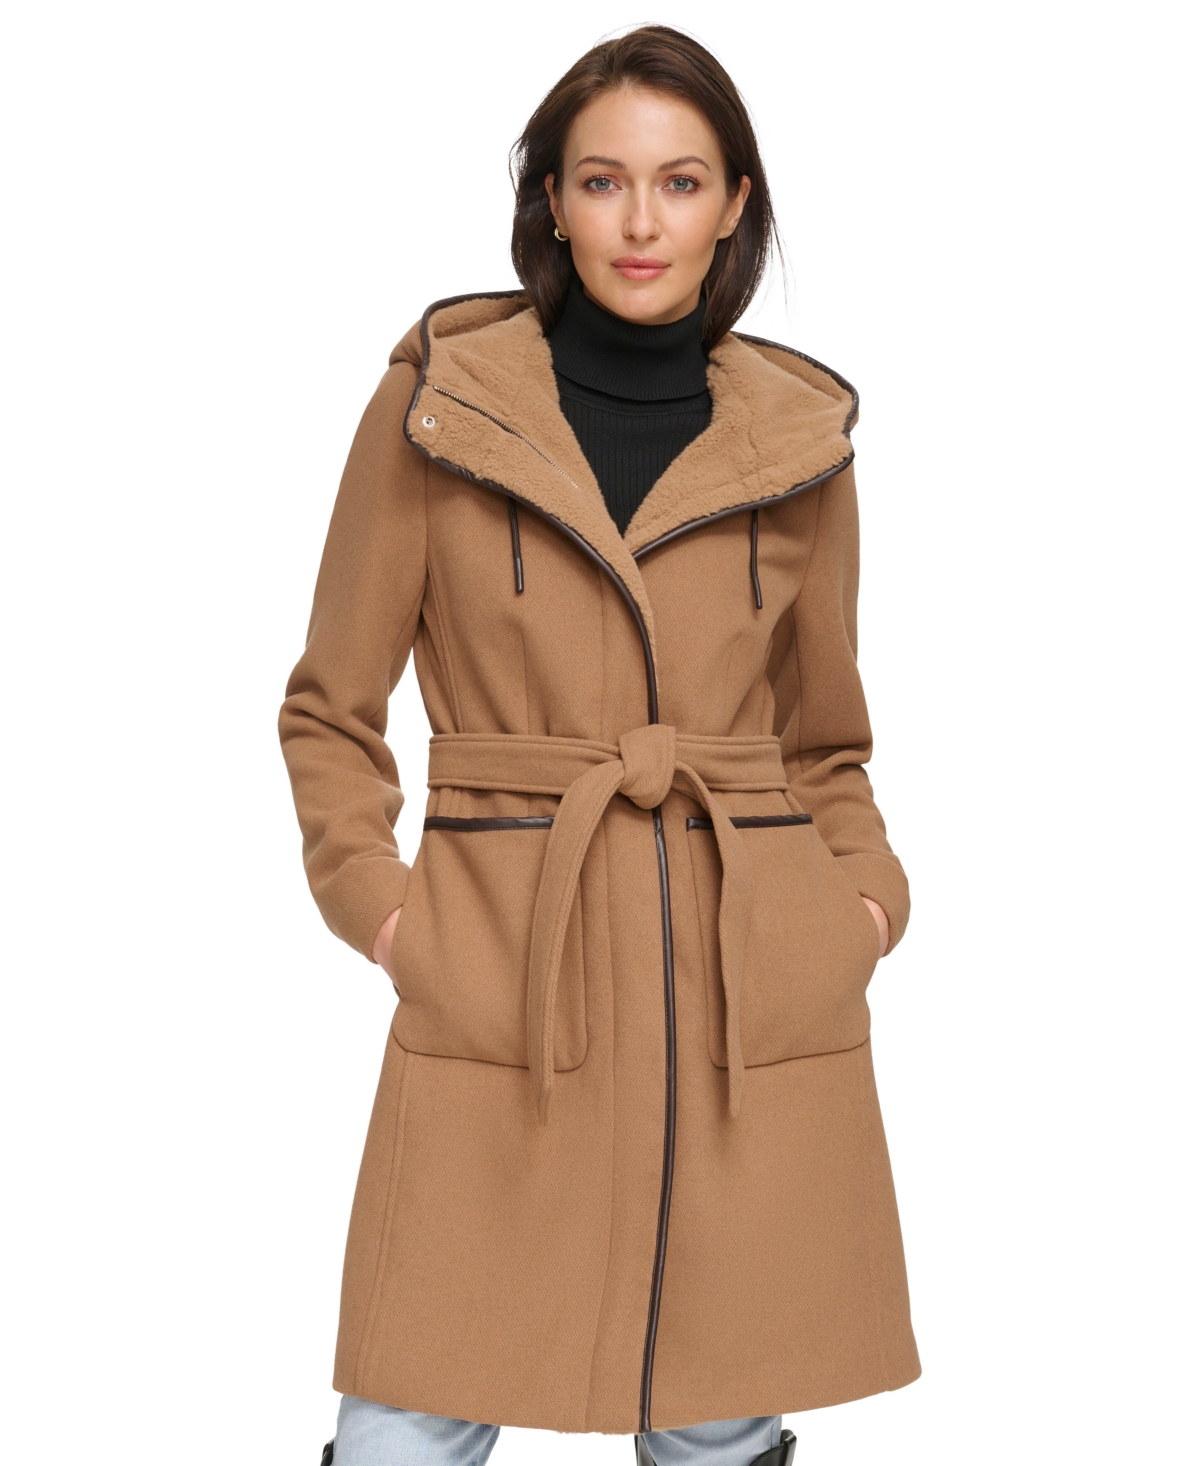 Women's Faux-Fur Hooded Wool Blend Belted Coat - Dark Camel